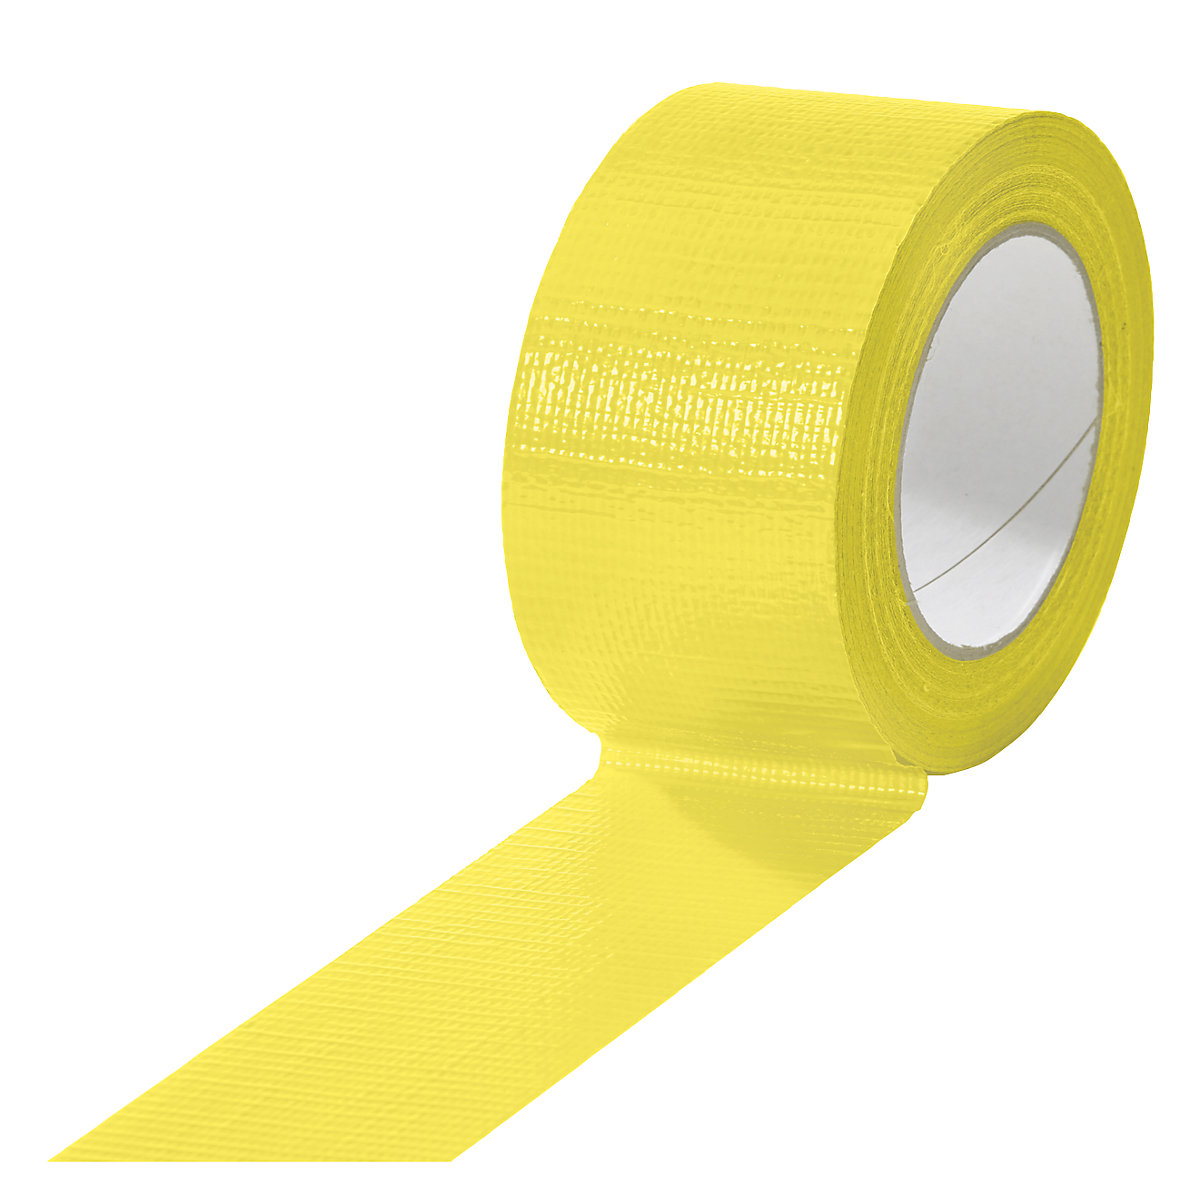 Taśma tkaninowa, w różnych kolorach, opak. 18 rolek, żółta, szer. taśmy 50 mm-17